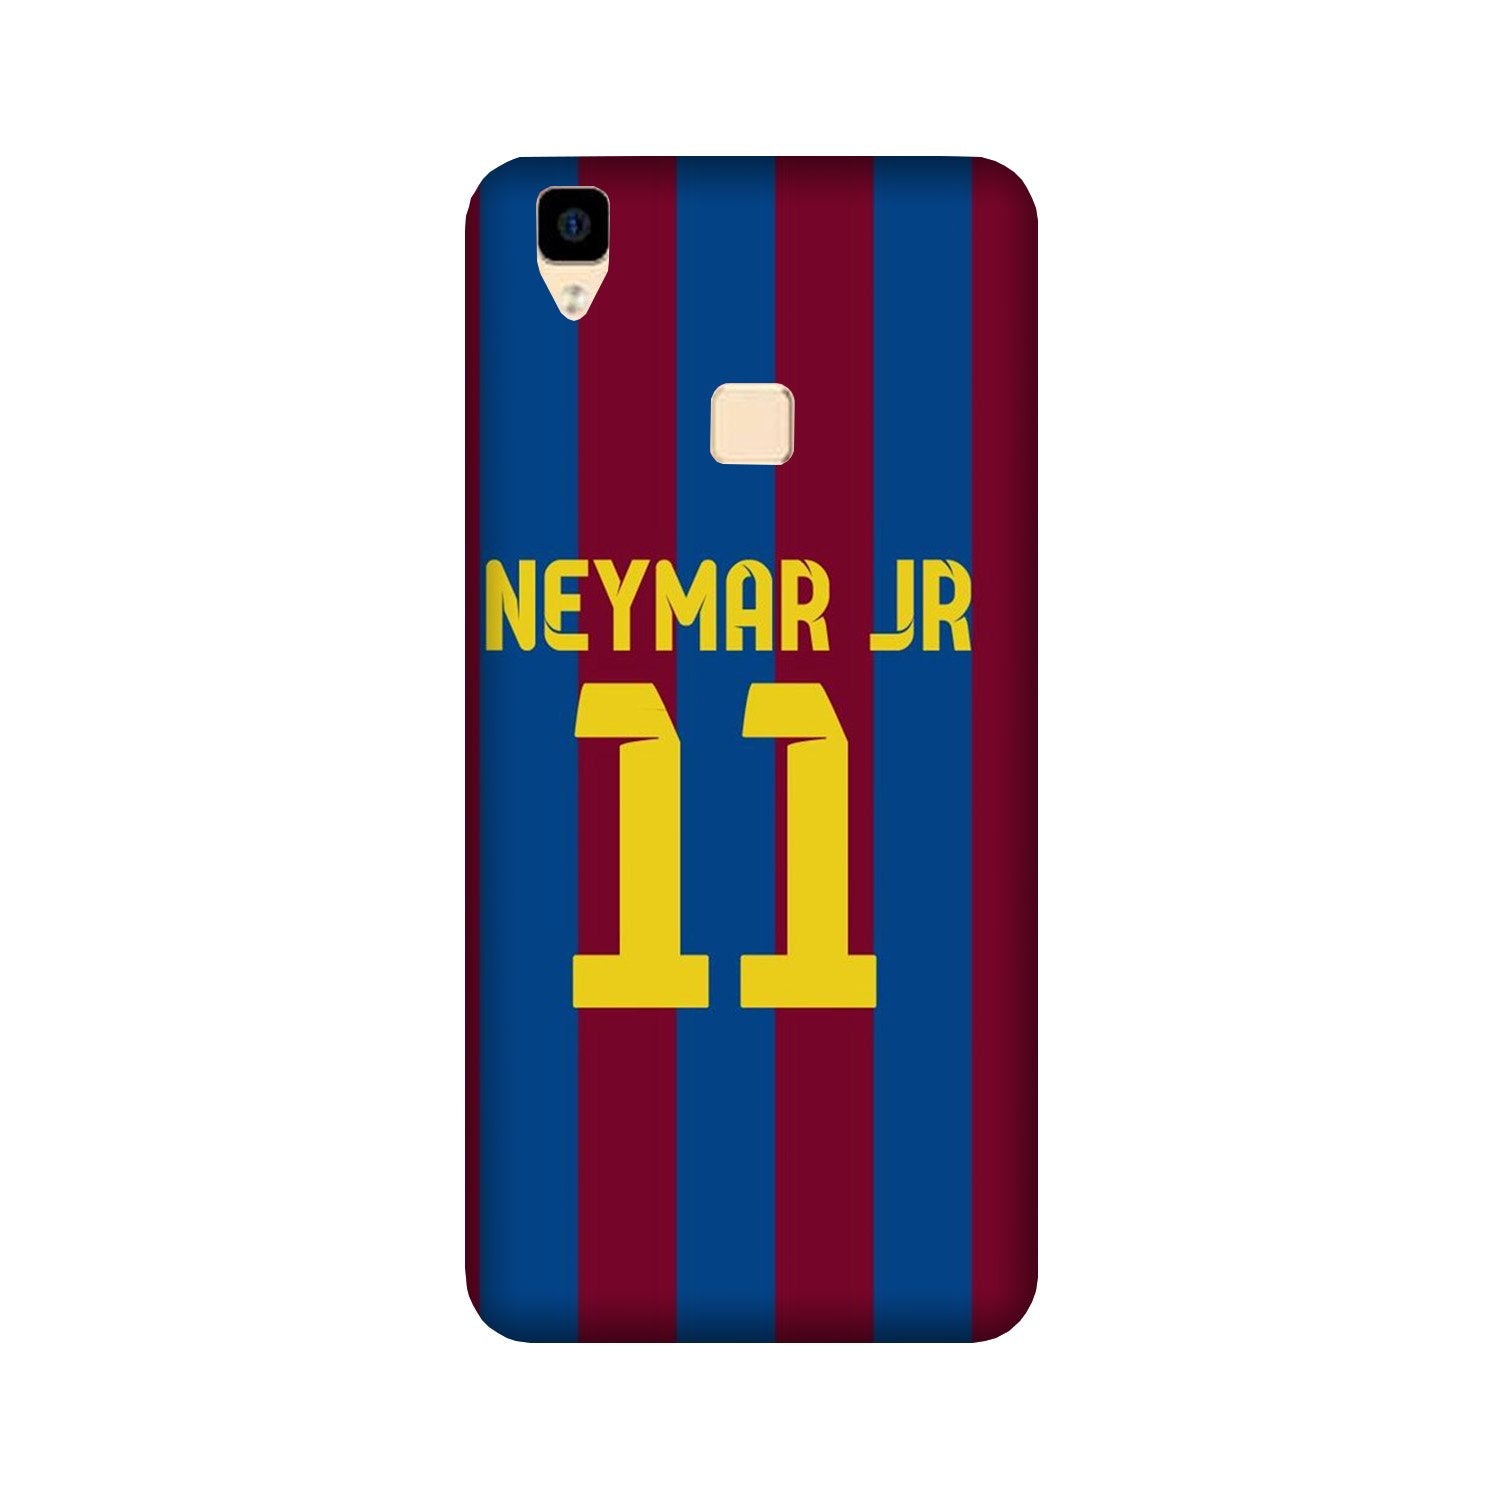 Neymar Jr Case for Vivo V3  (Design - 162)